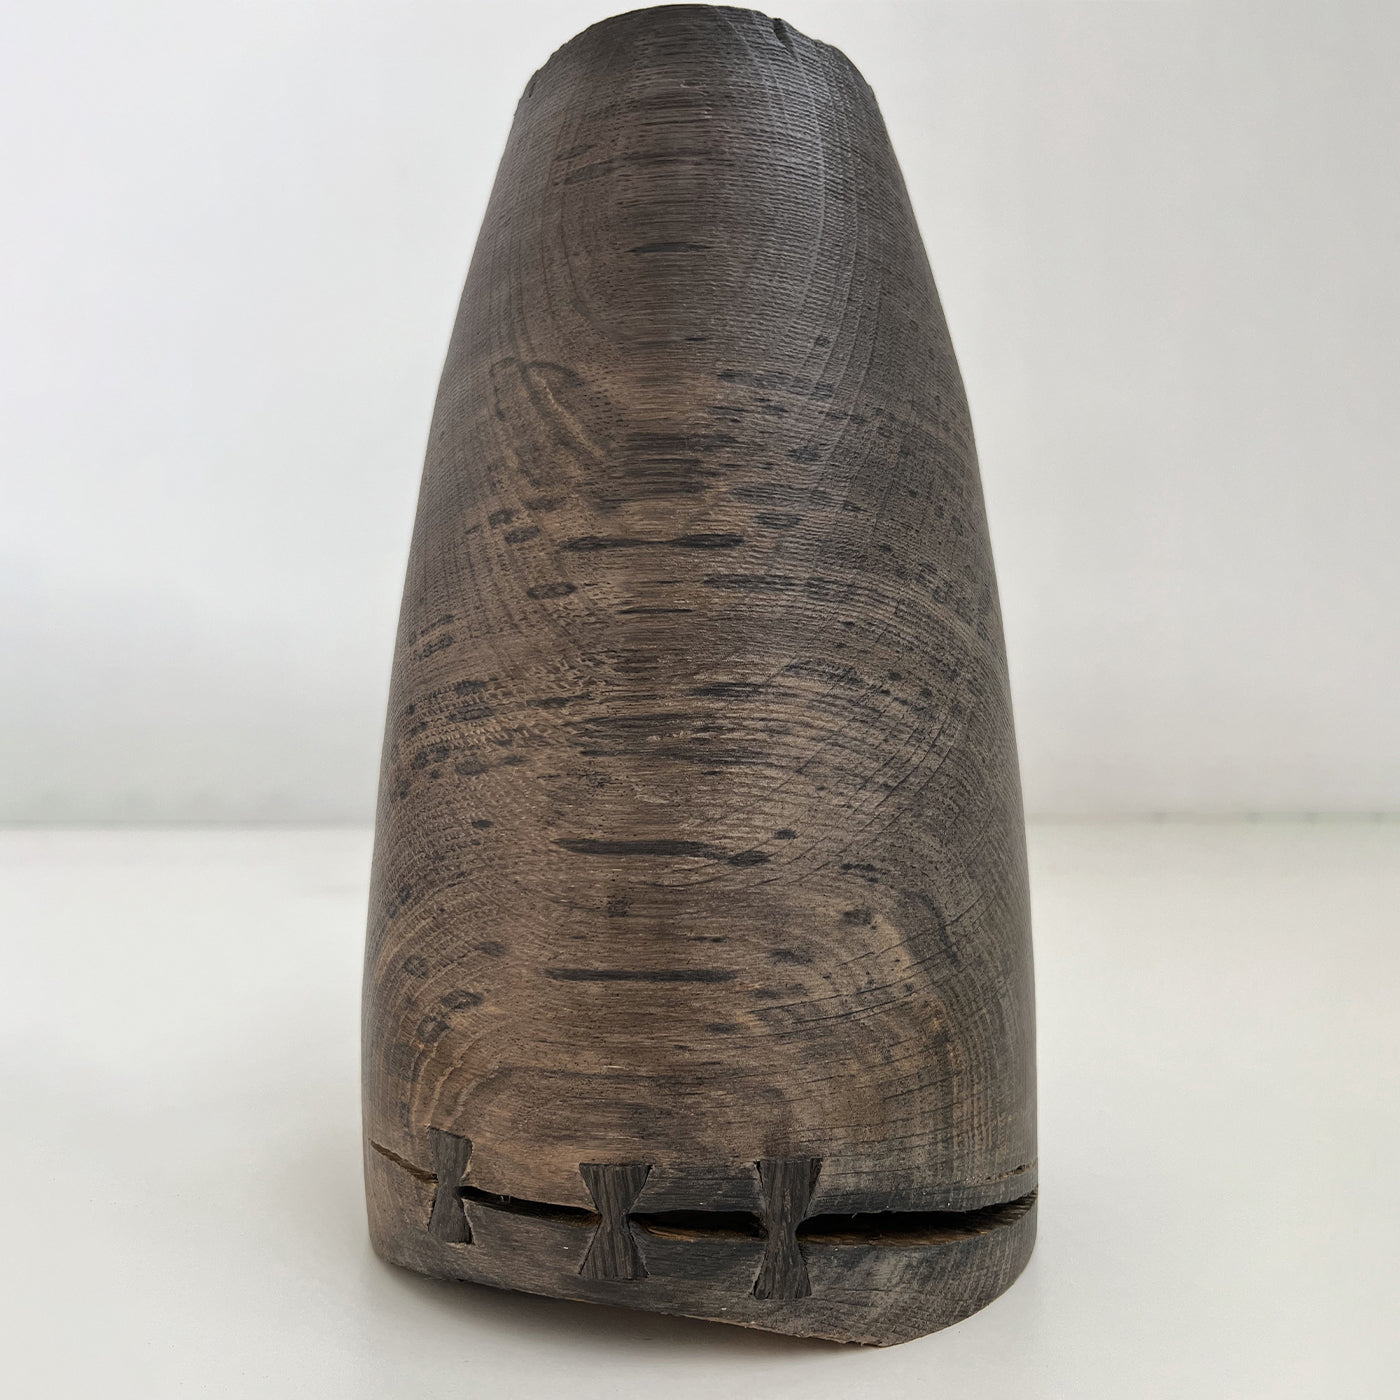 Vase creux en chêne fossile #2 - Vue alternative 1